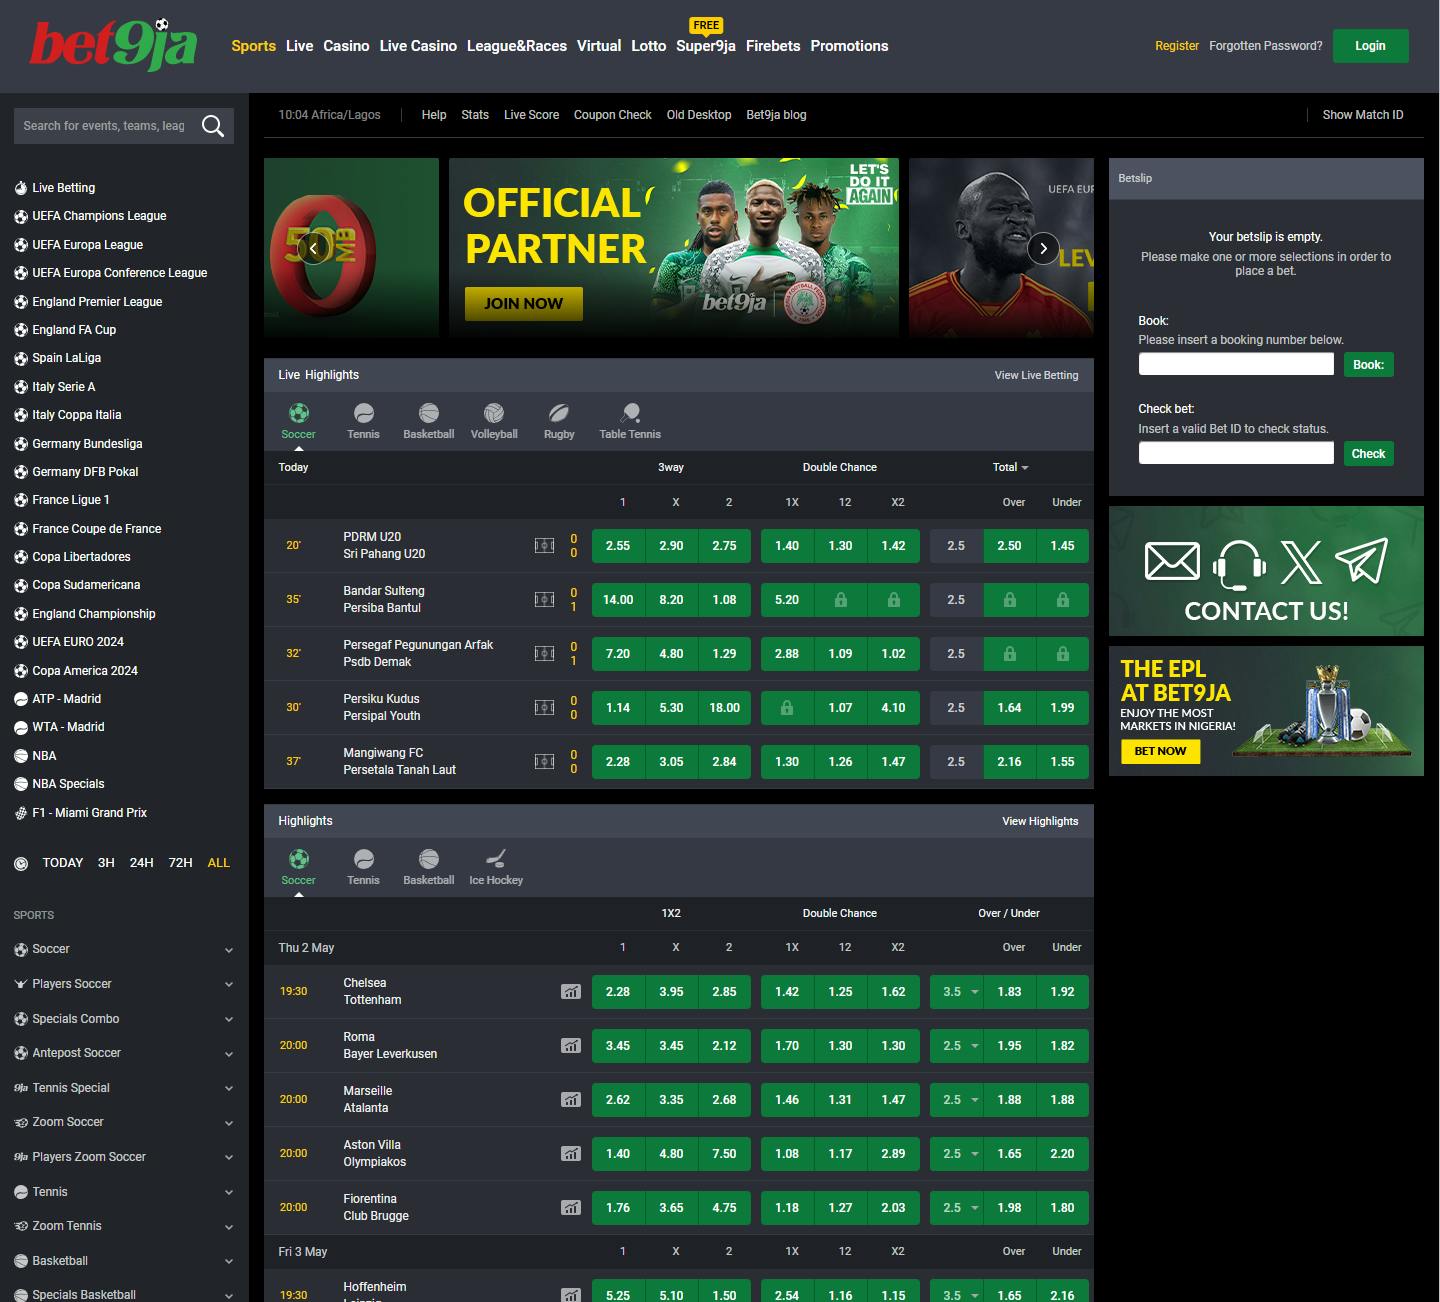 Bet9ja sports betting page